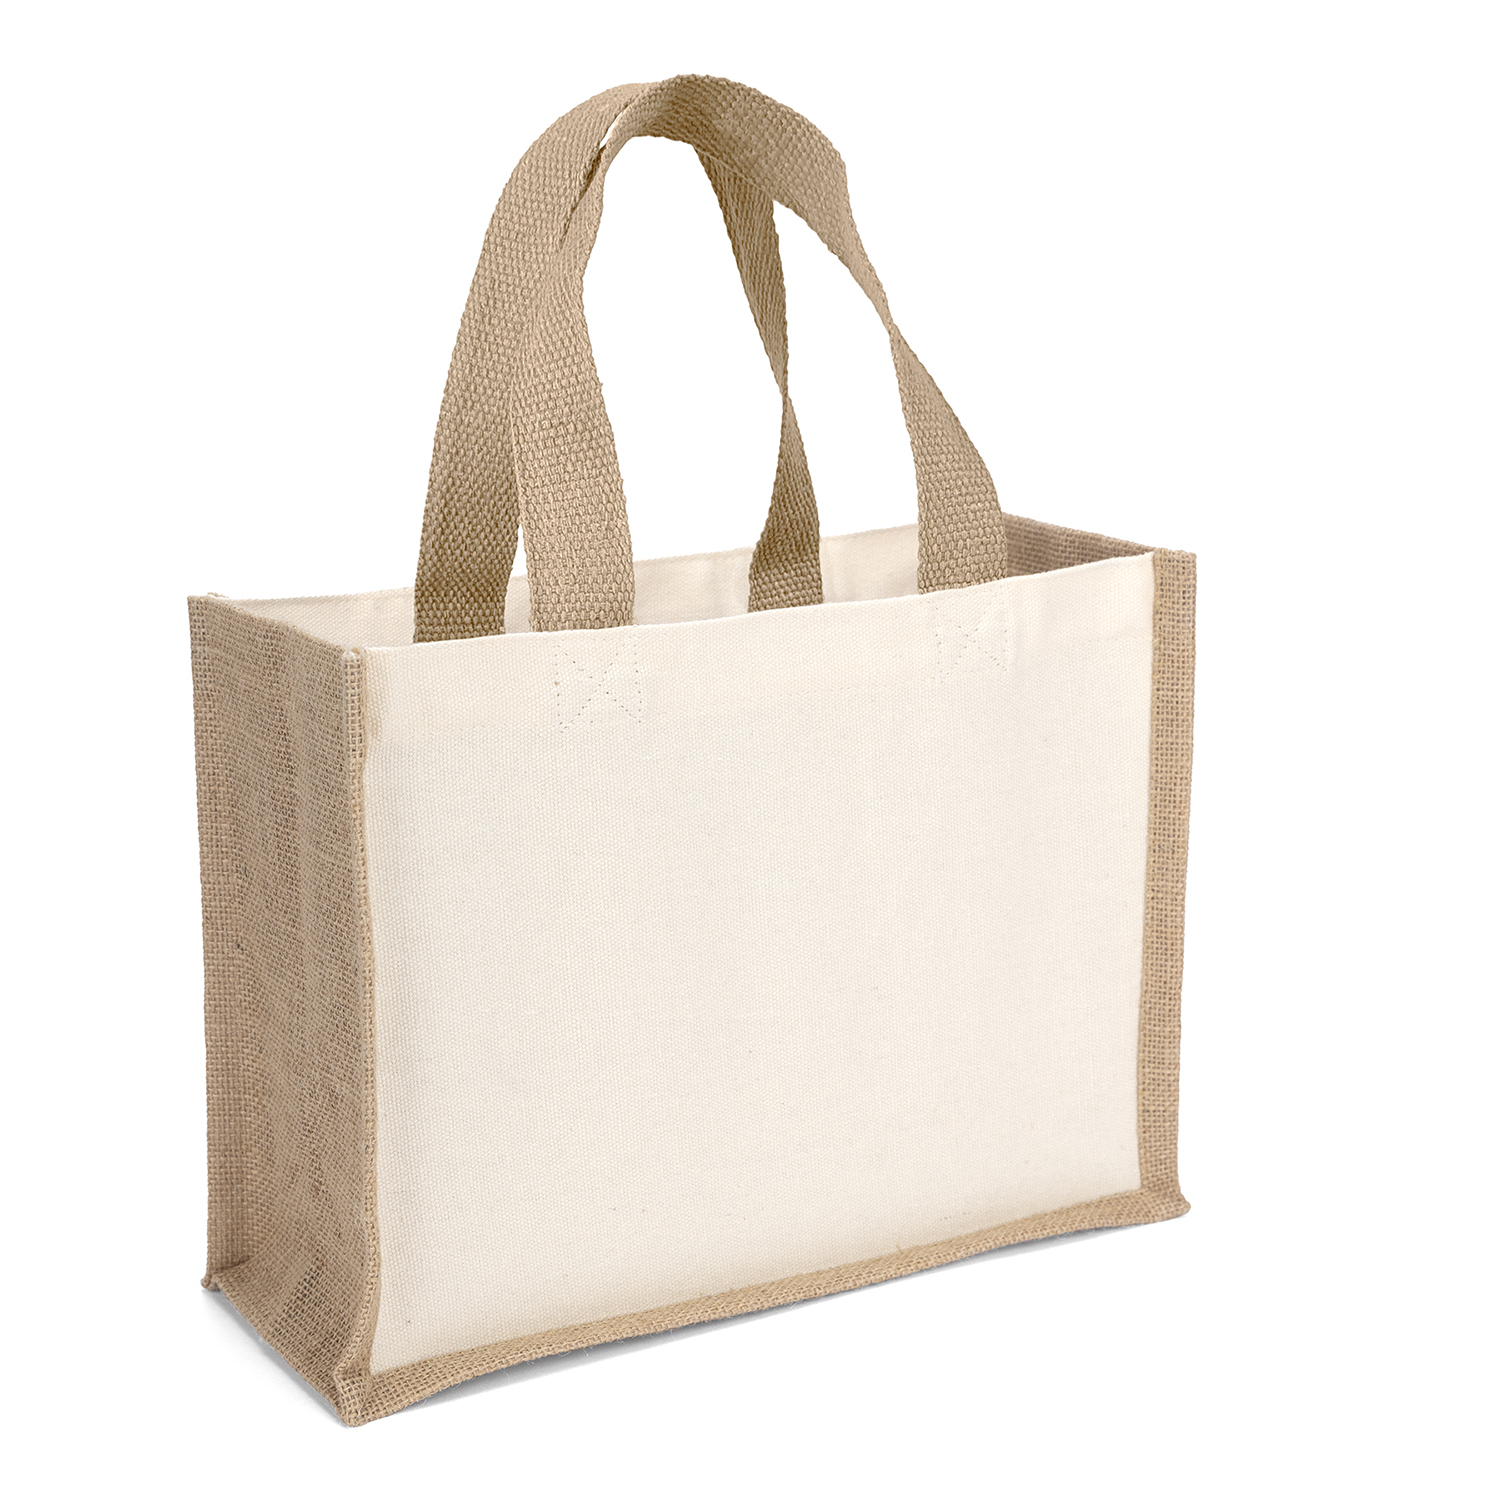 Bag Makers CVRE129 - Custom Printed Laminated Promotional Tote Bag